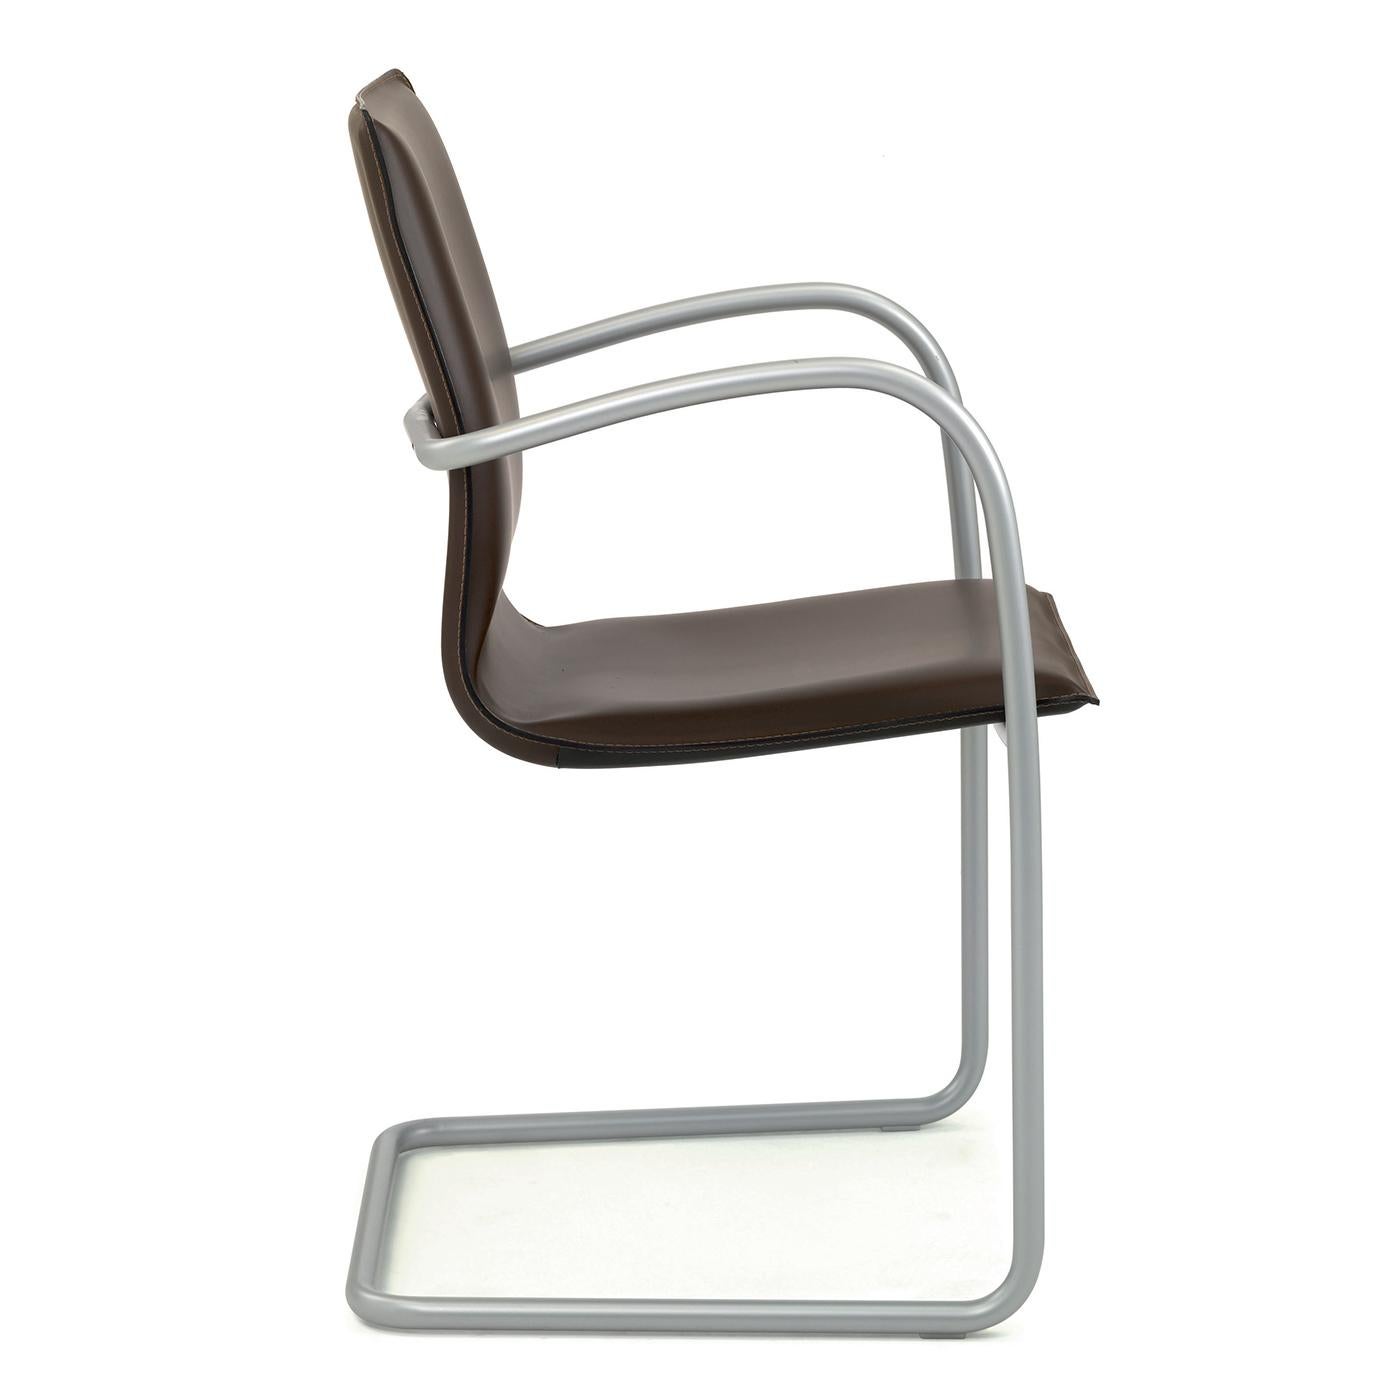 Dieser harmonisch gestaltete Sessel hat eine Schale aus Buchensperrholz, die mit terrafarbenem Leder gepolstert ist. Der abgerundete Stahlrohrrahmen ist in der Farbe Flüssigaluminium gehalten. Zusätzlicher Komfort wird durch die zusätzliche